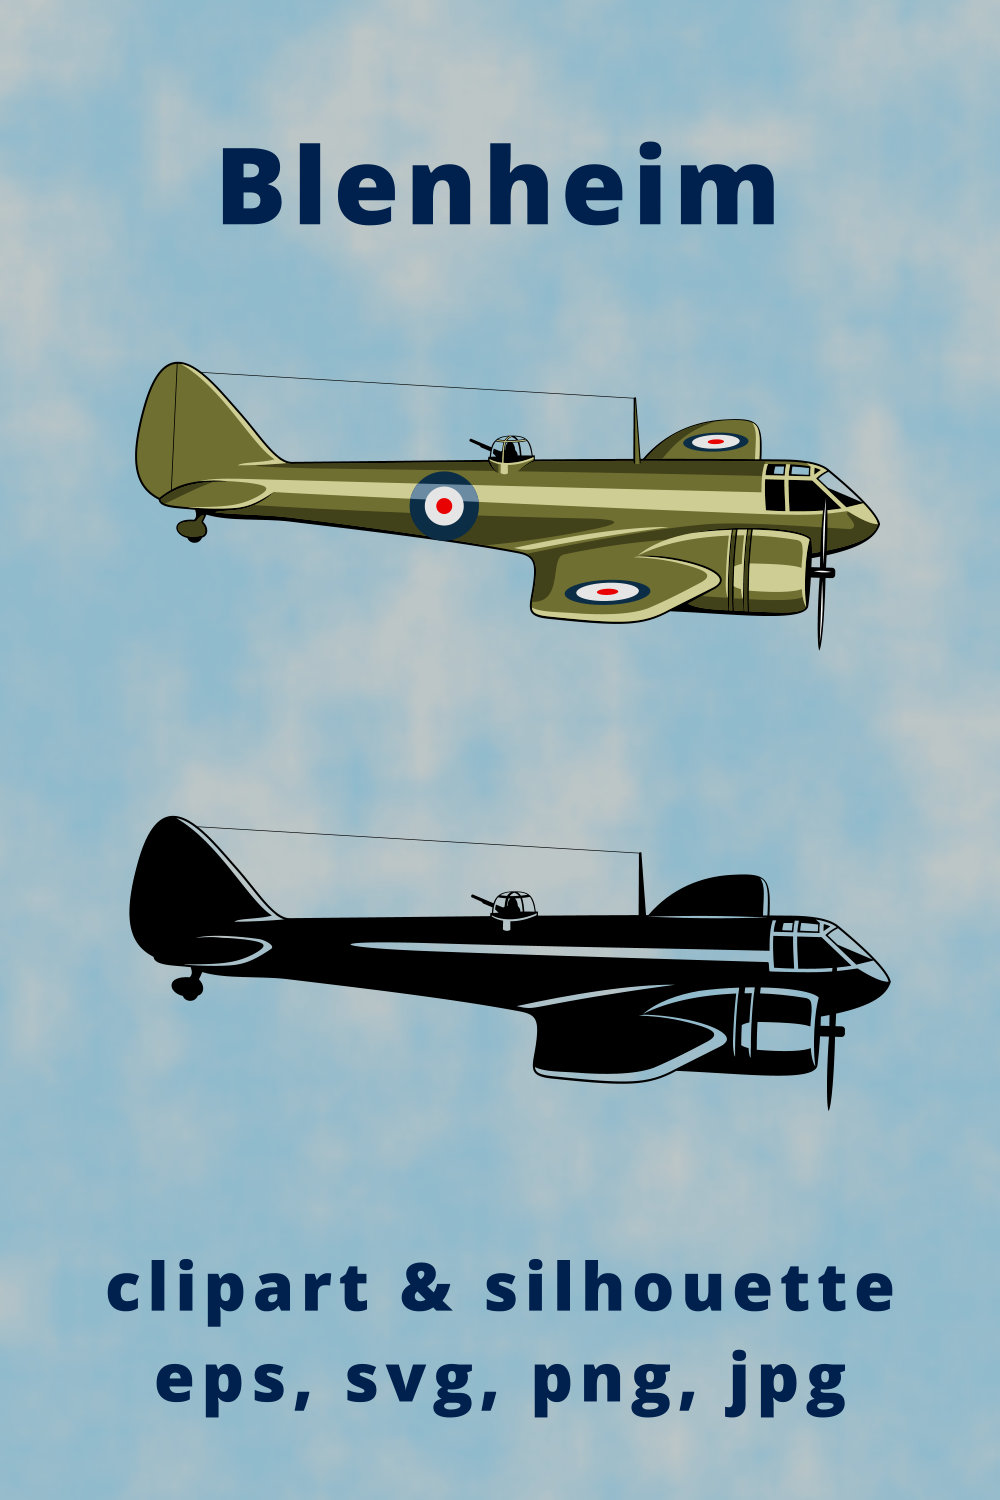 Blenheim British Light Bomber Clipart pinterest preview image.